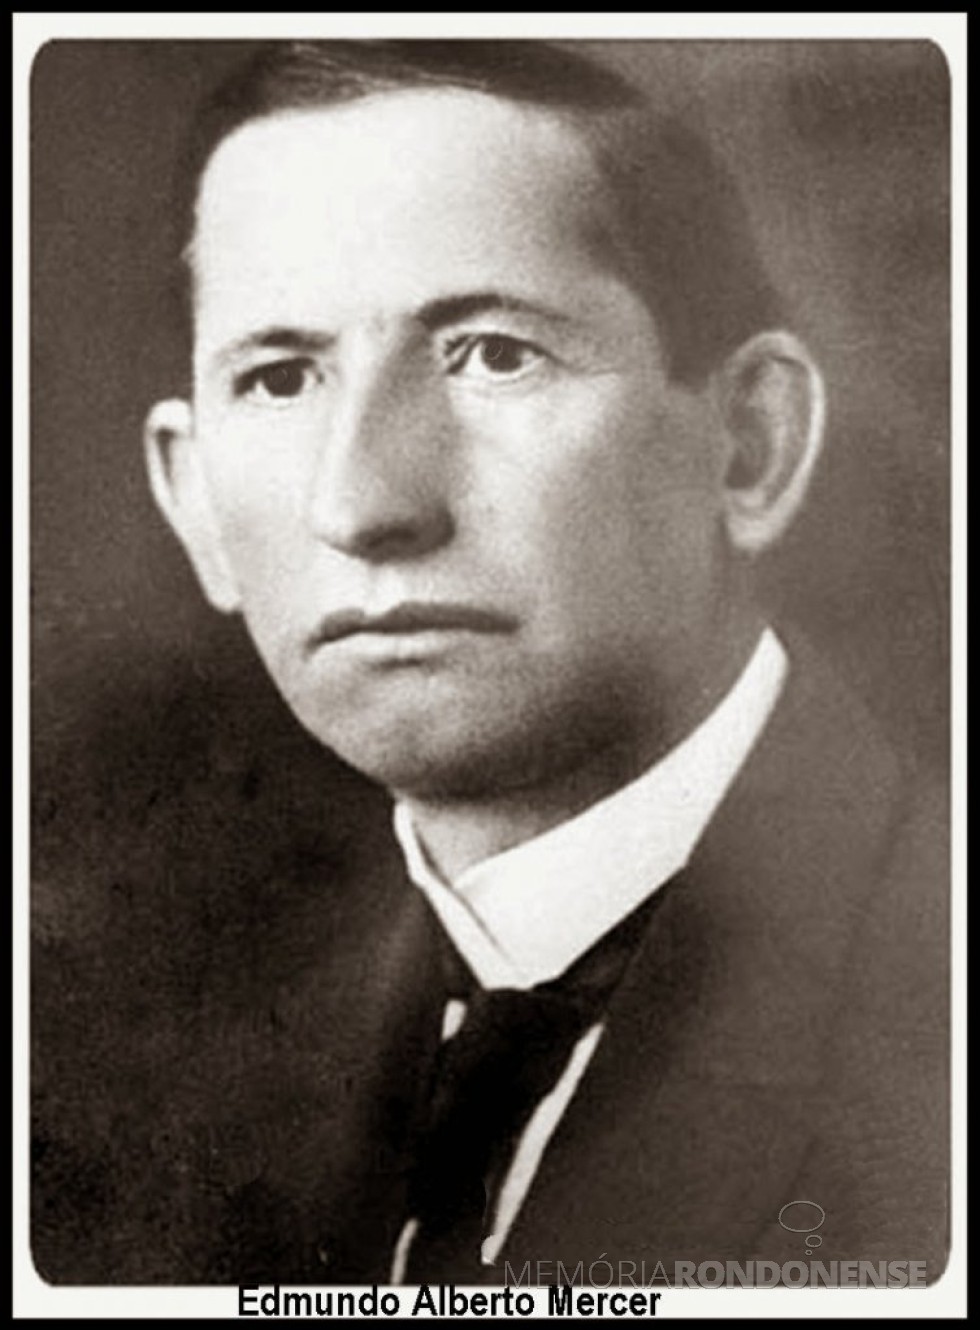 || Edmundo Alberto Mercer que realizou o levantamento topográfico do Rio Piquri, em 1938.
Imagem: Acervo Wille Bathke Jr. - FOTO 5 - 